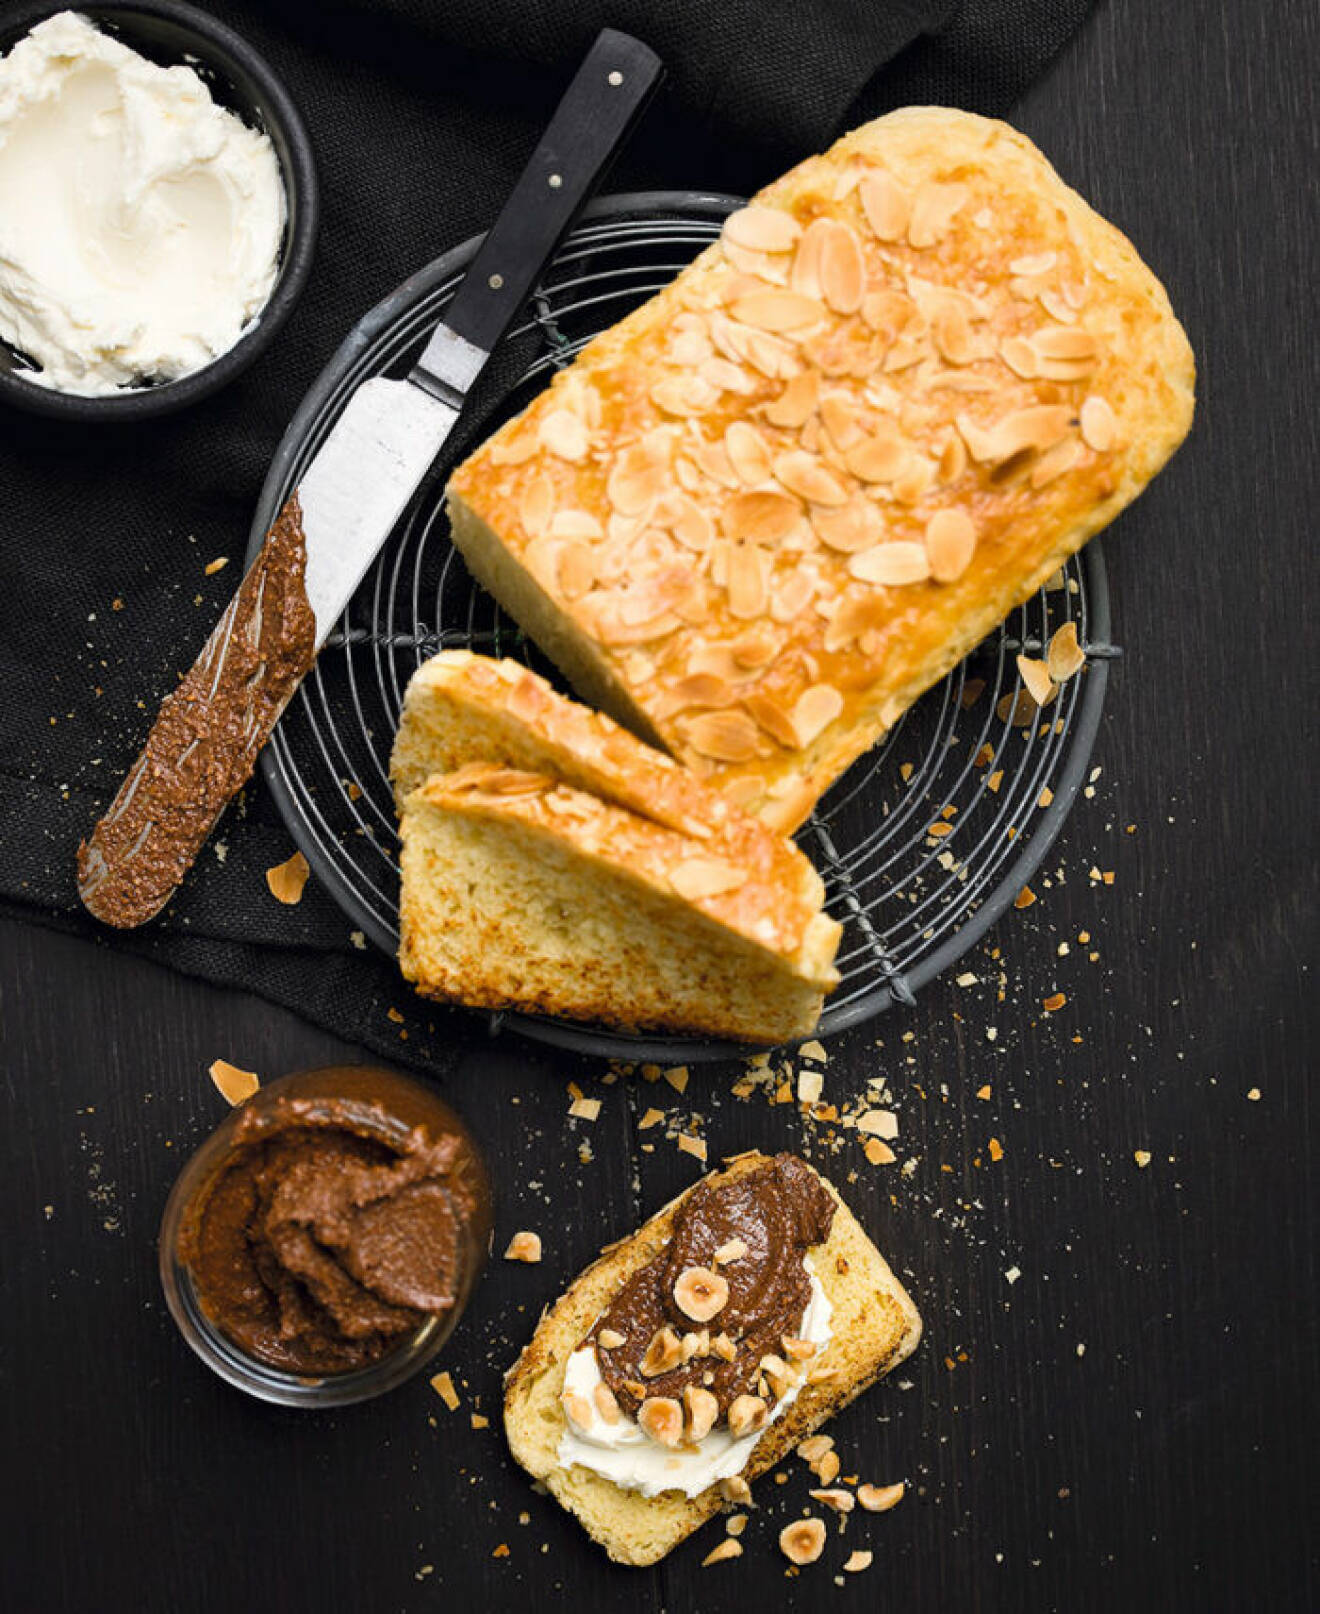 Hemgjord Nutella passar utmärkt på nyrostat bröd.